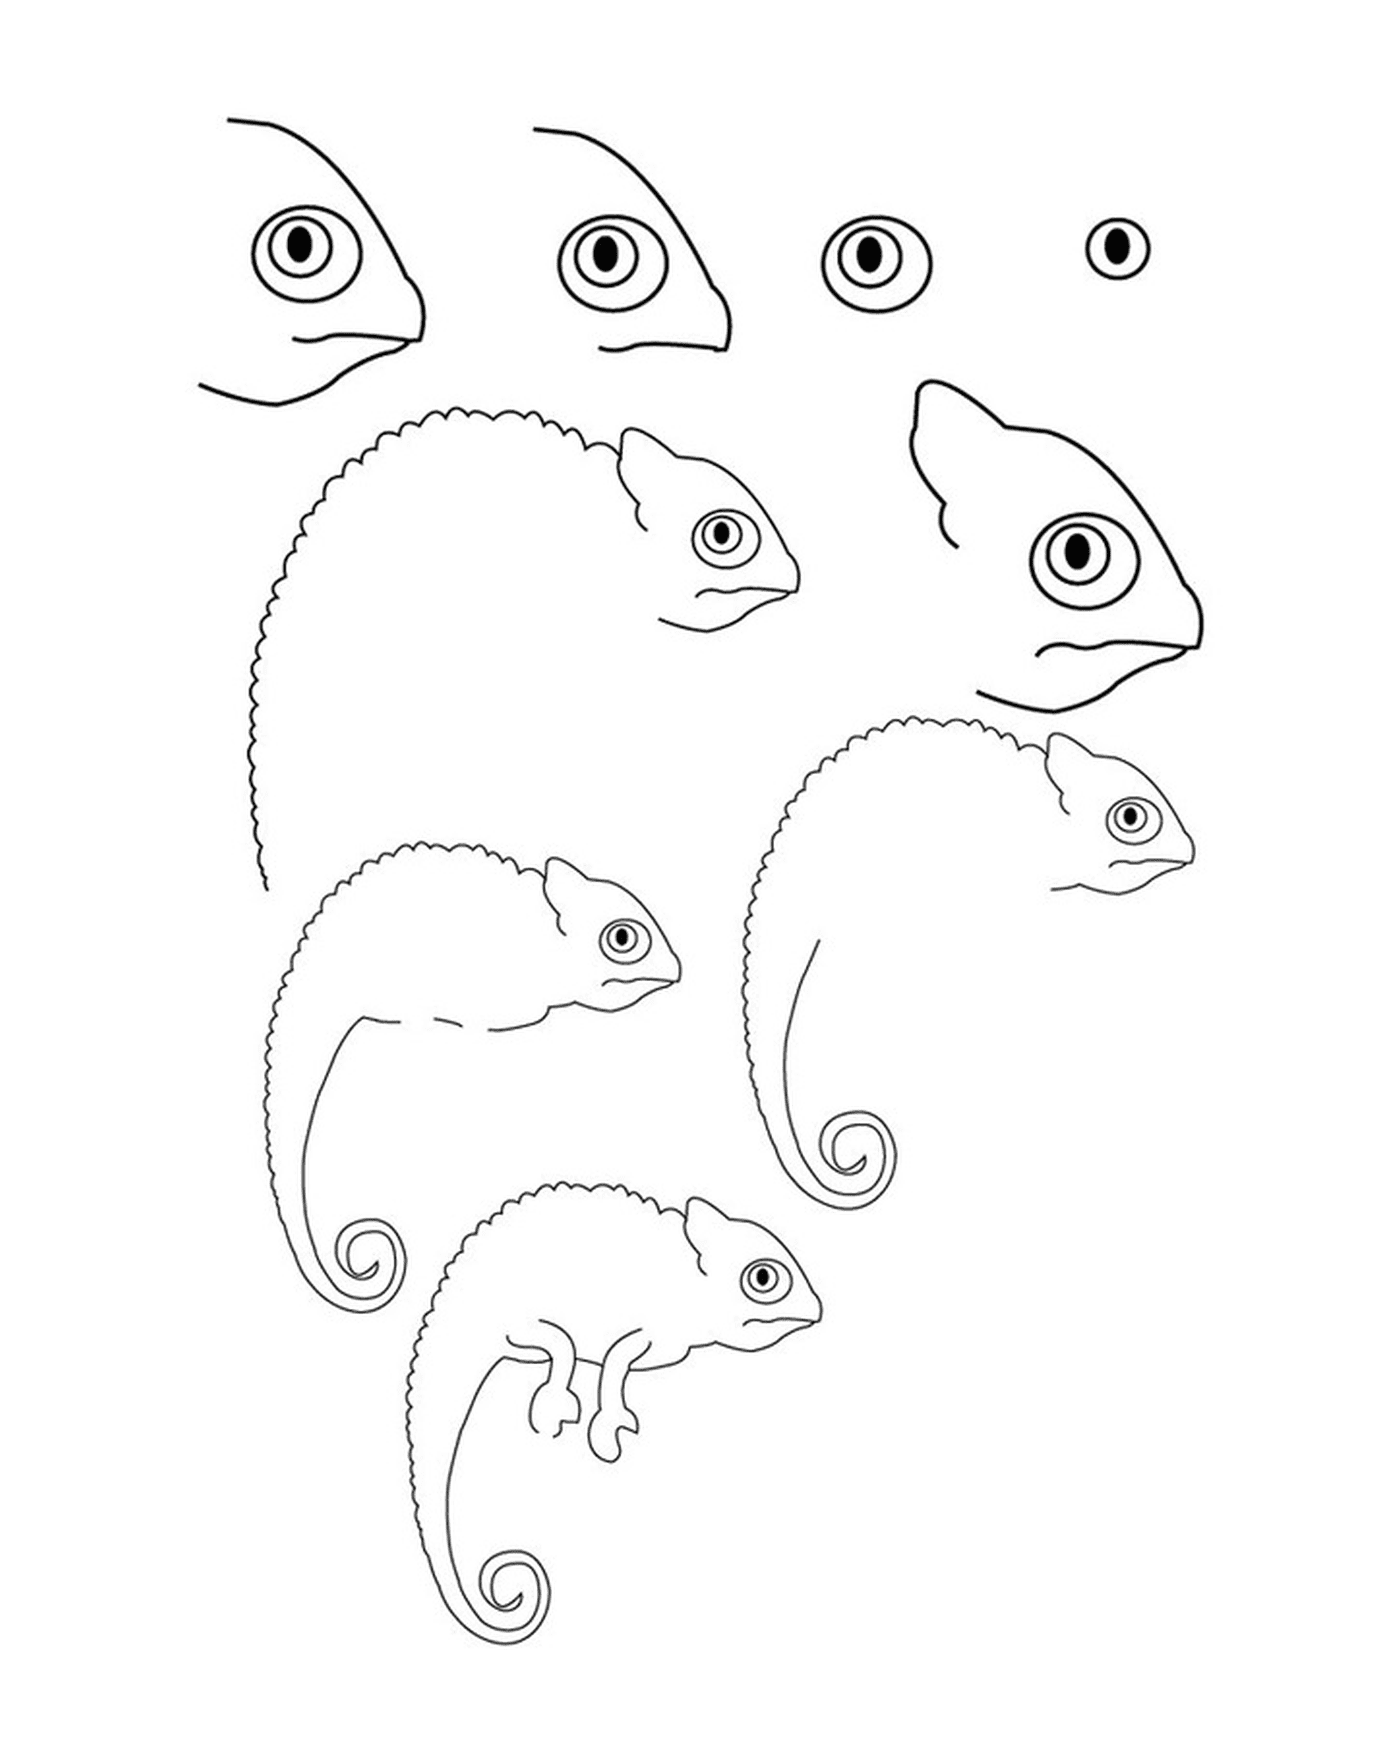  Cómo dibujar un camaleón 